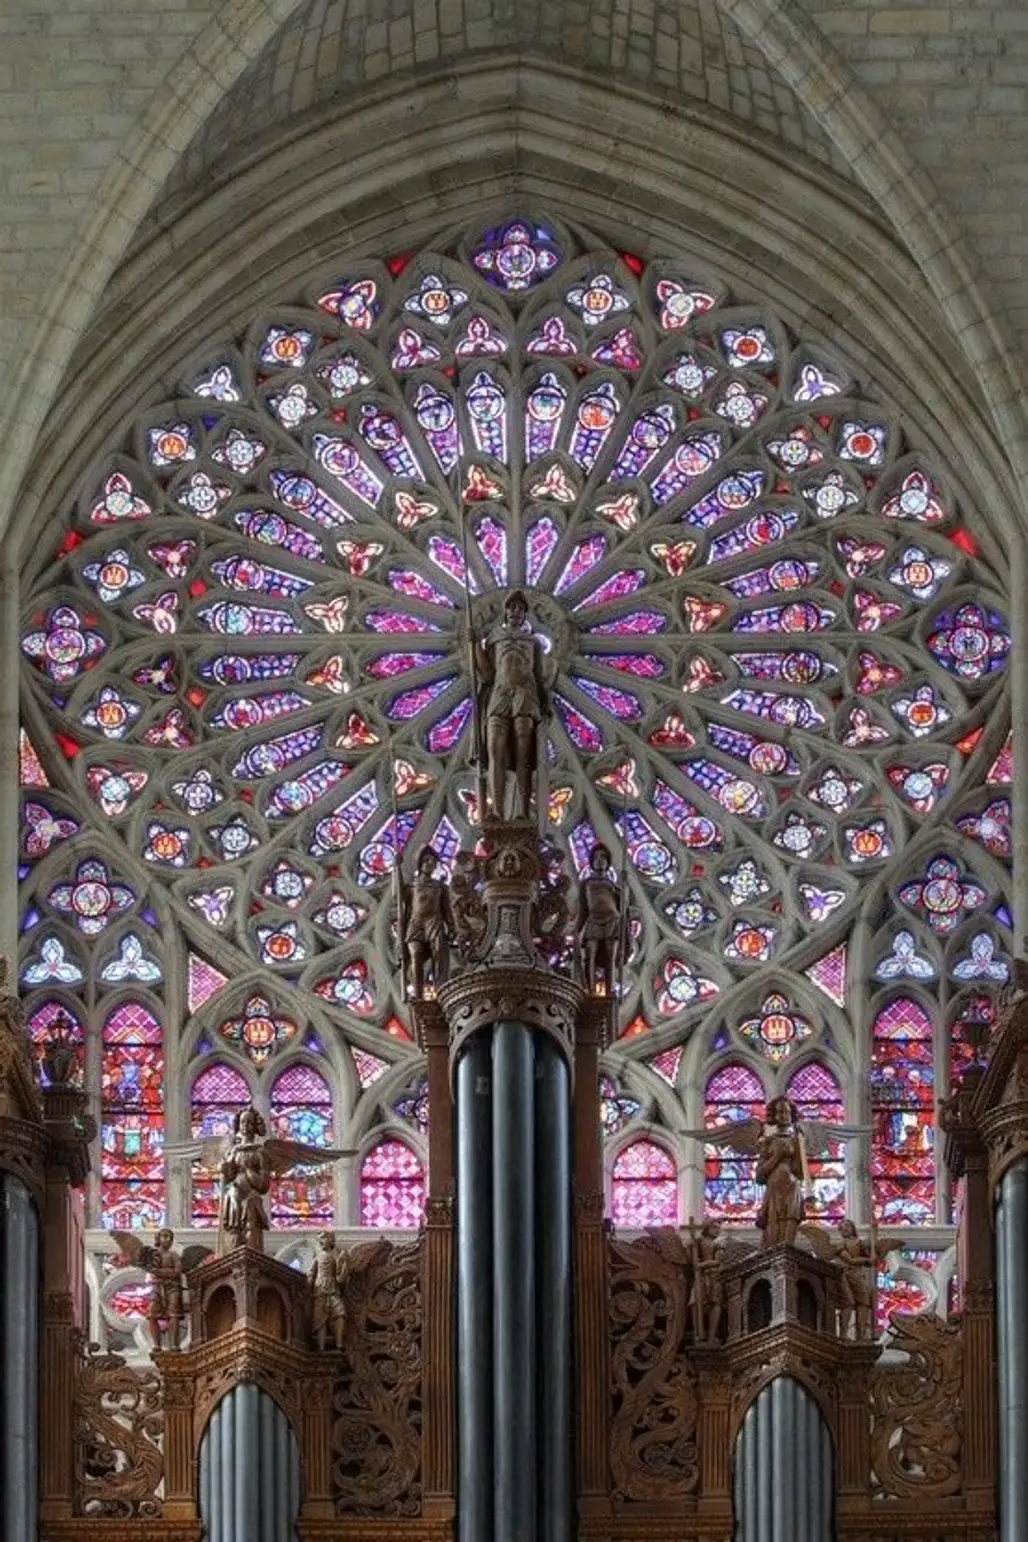 Saint Gatien's Cathedral, Tours, France